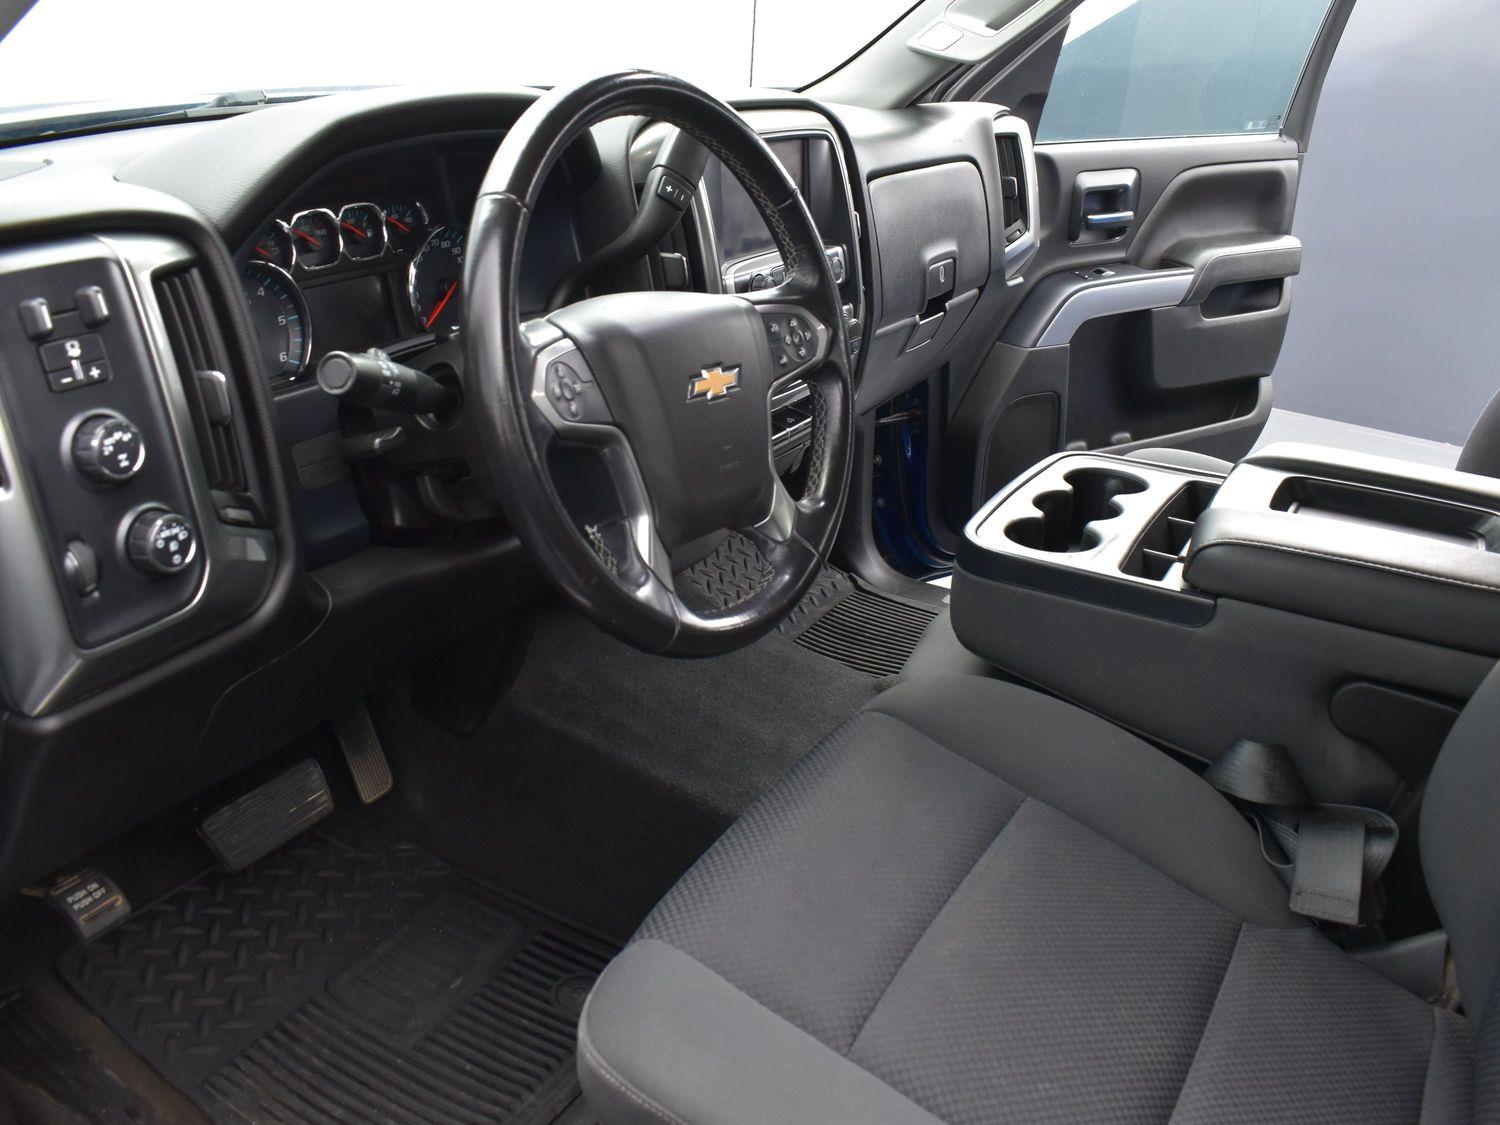 Used 2018 Chevrolet Silverado 1500 LT Crew Cab Truck for sale in Grand Island NE